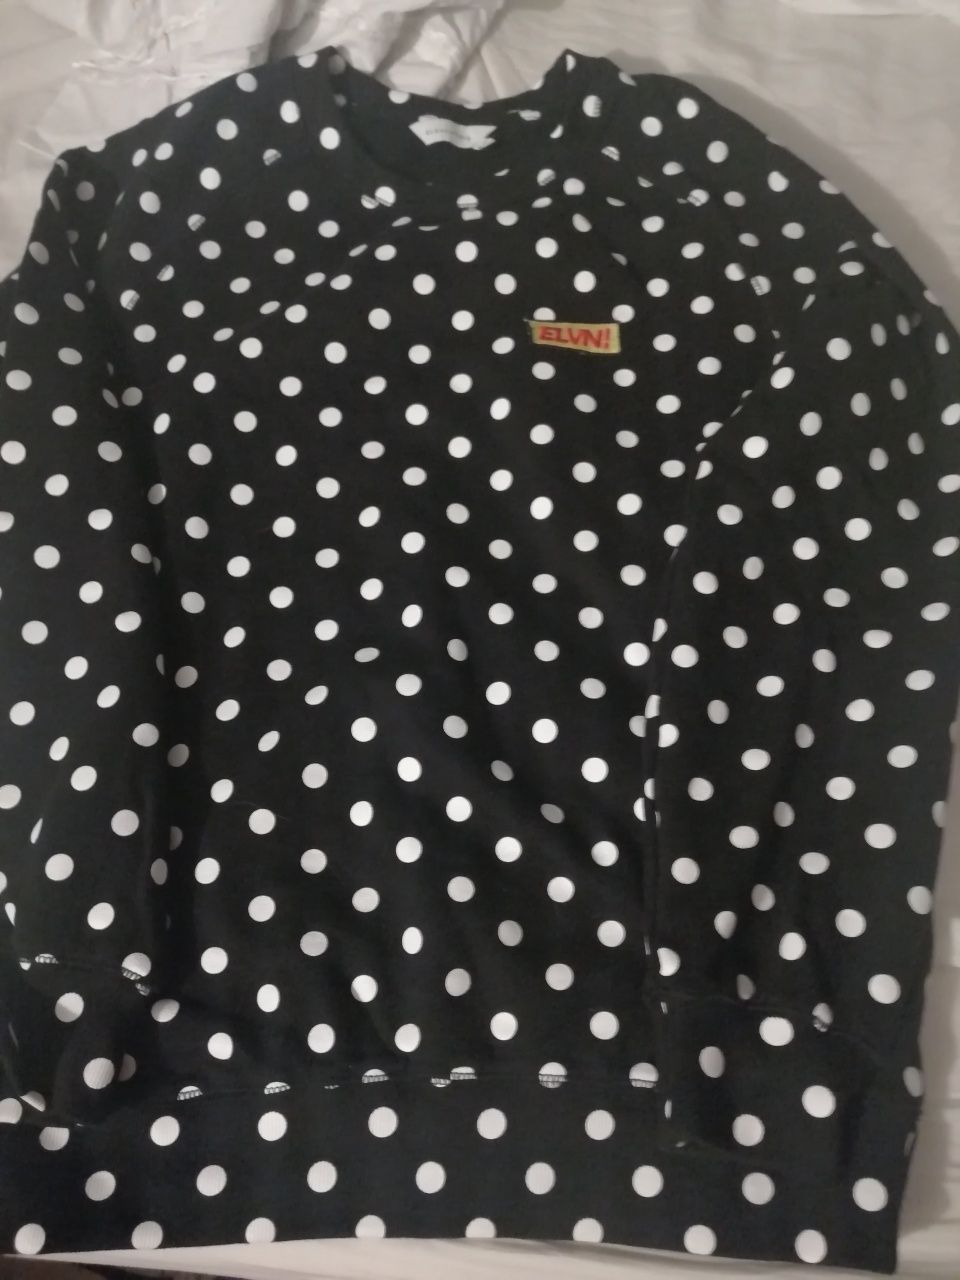 Sweat shirt preta e branca com bolas